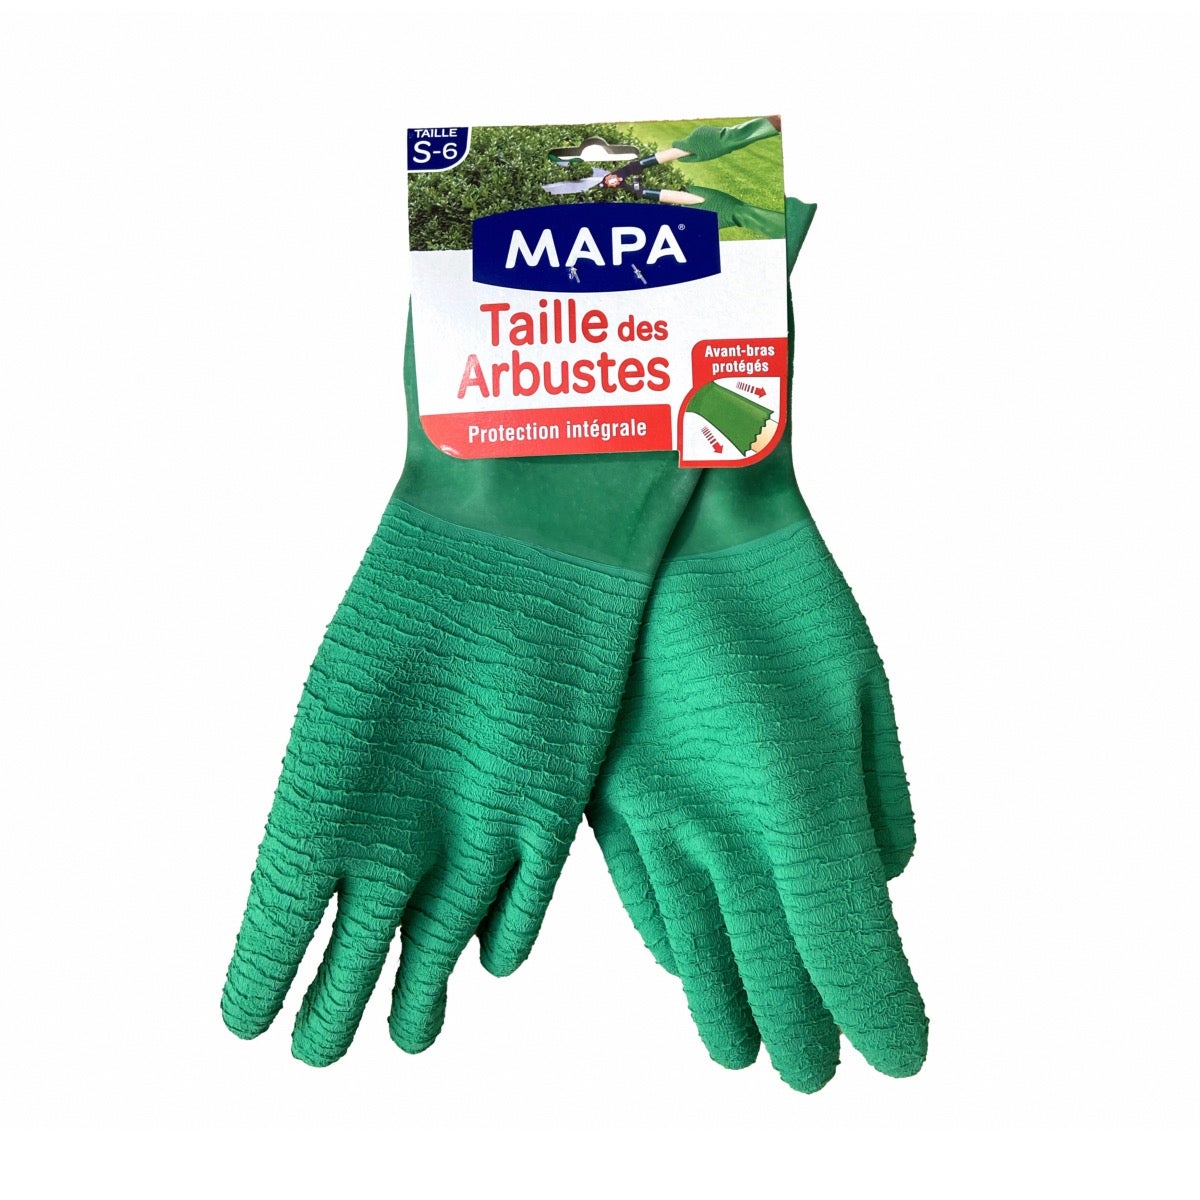 Acheter Mapa gants de coton 2 pièces ? Maintenant pour € 8.38 chez